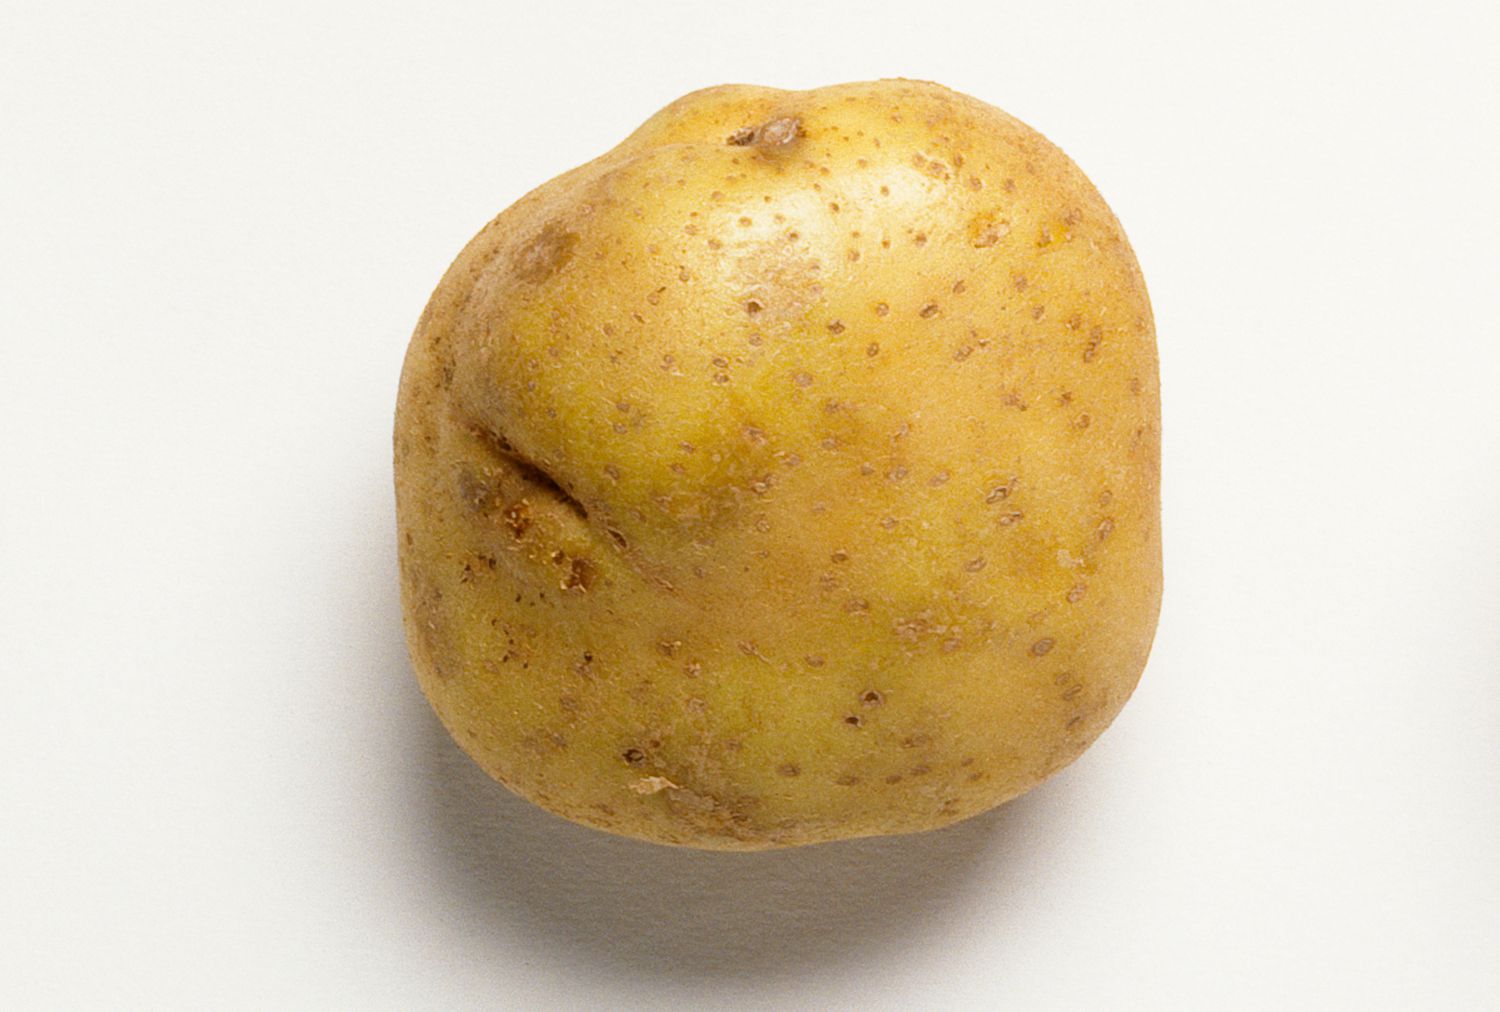 Como referencia, el valor nutricional de 1 patata Russet pequeña (138 gramos) es el siguiente: